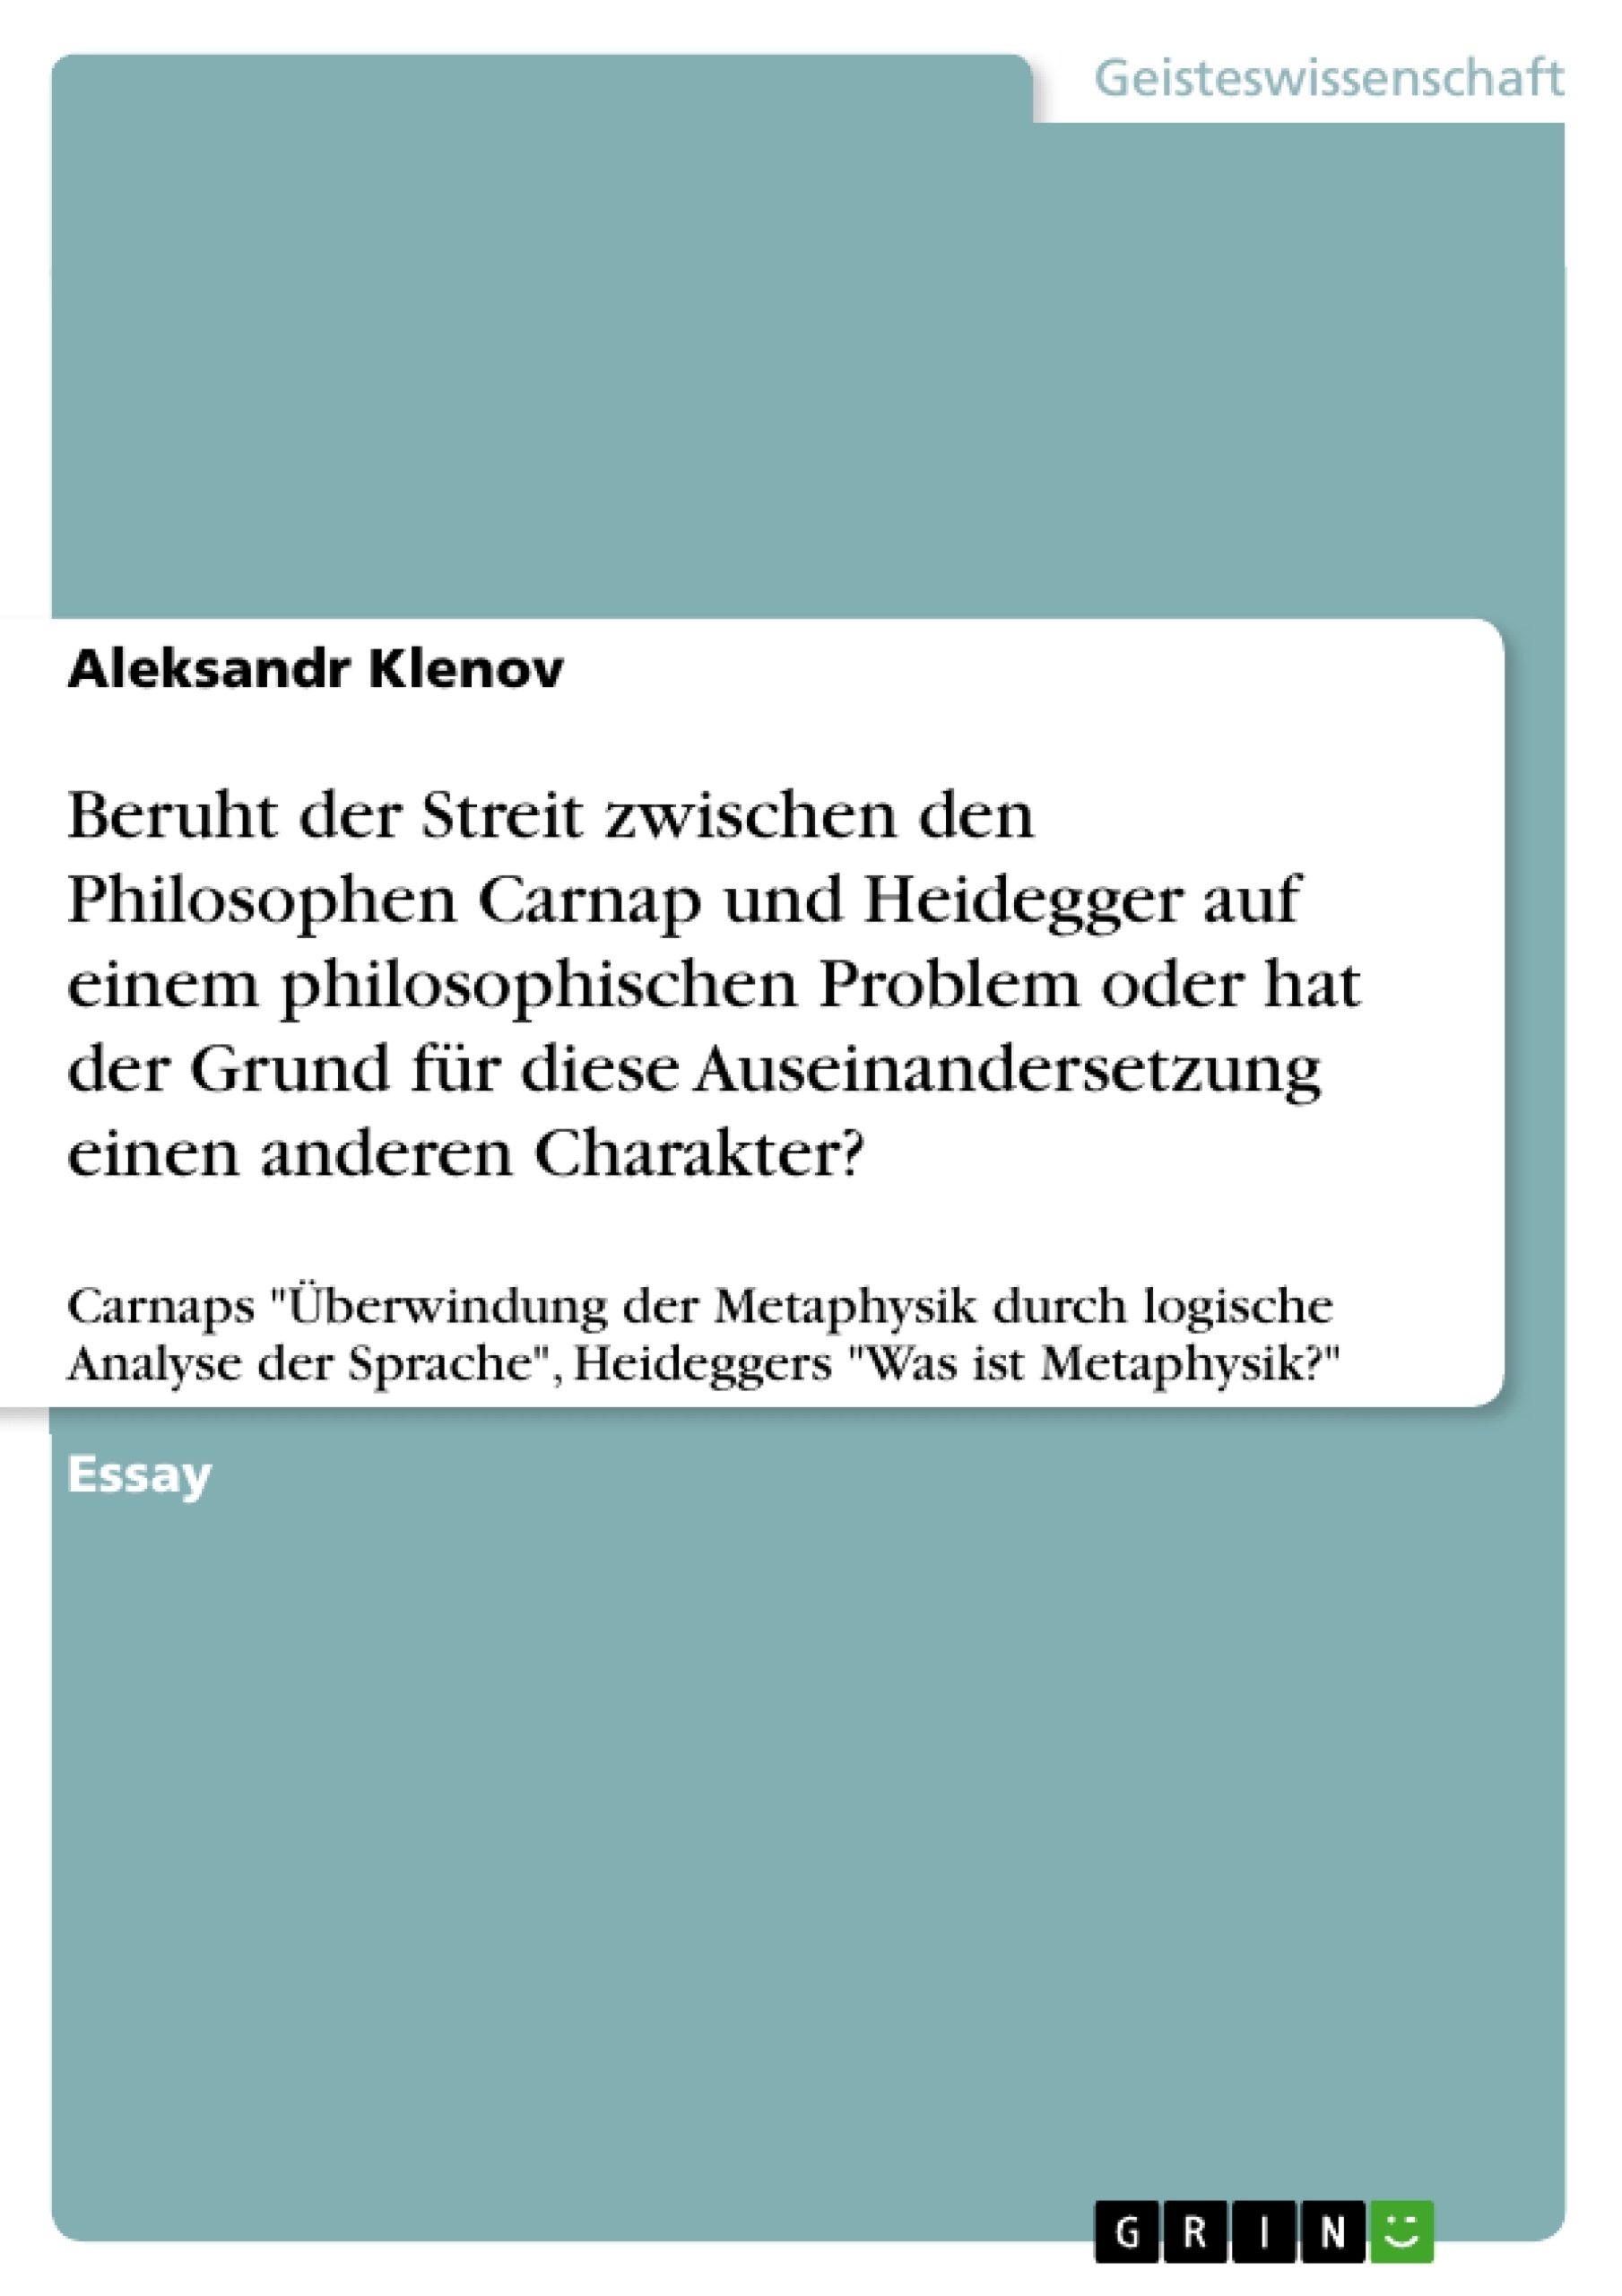 Título: Beruht der Streit zwischen den Philosophen Carnap und Heidegger auf einem philosophischen Problem oder hat der Grund für diese Auseinandersetzung einen anderen Charakter?